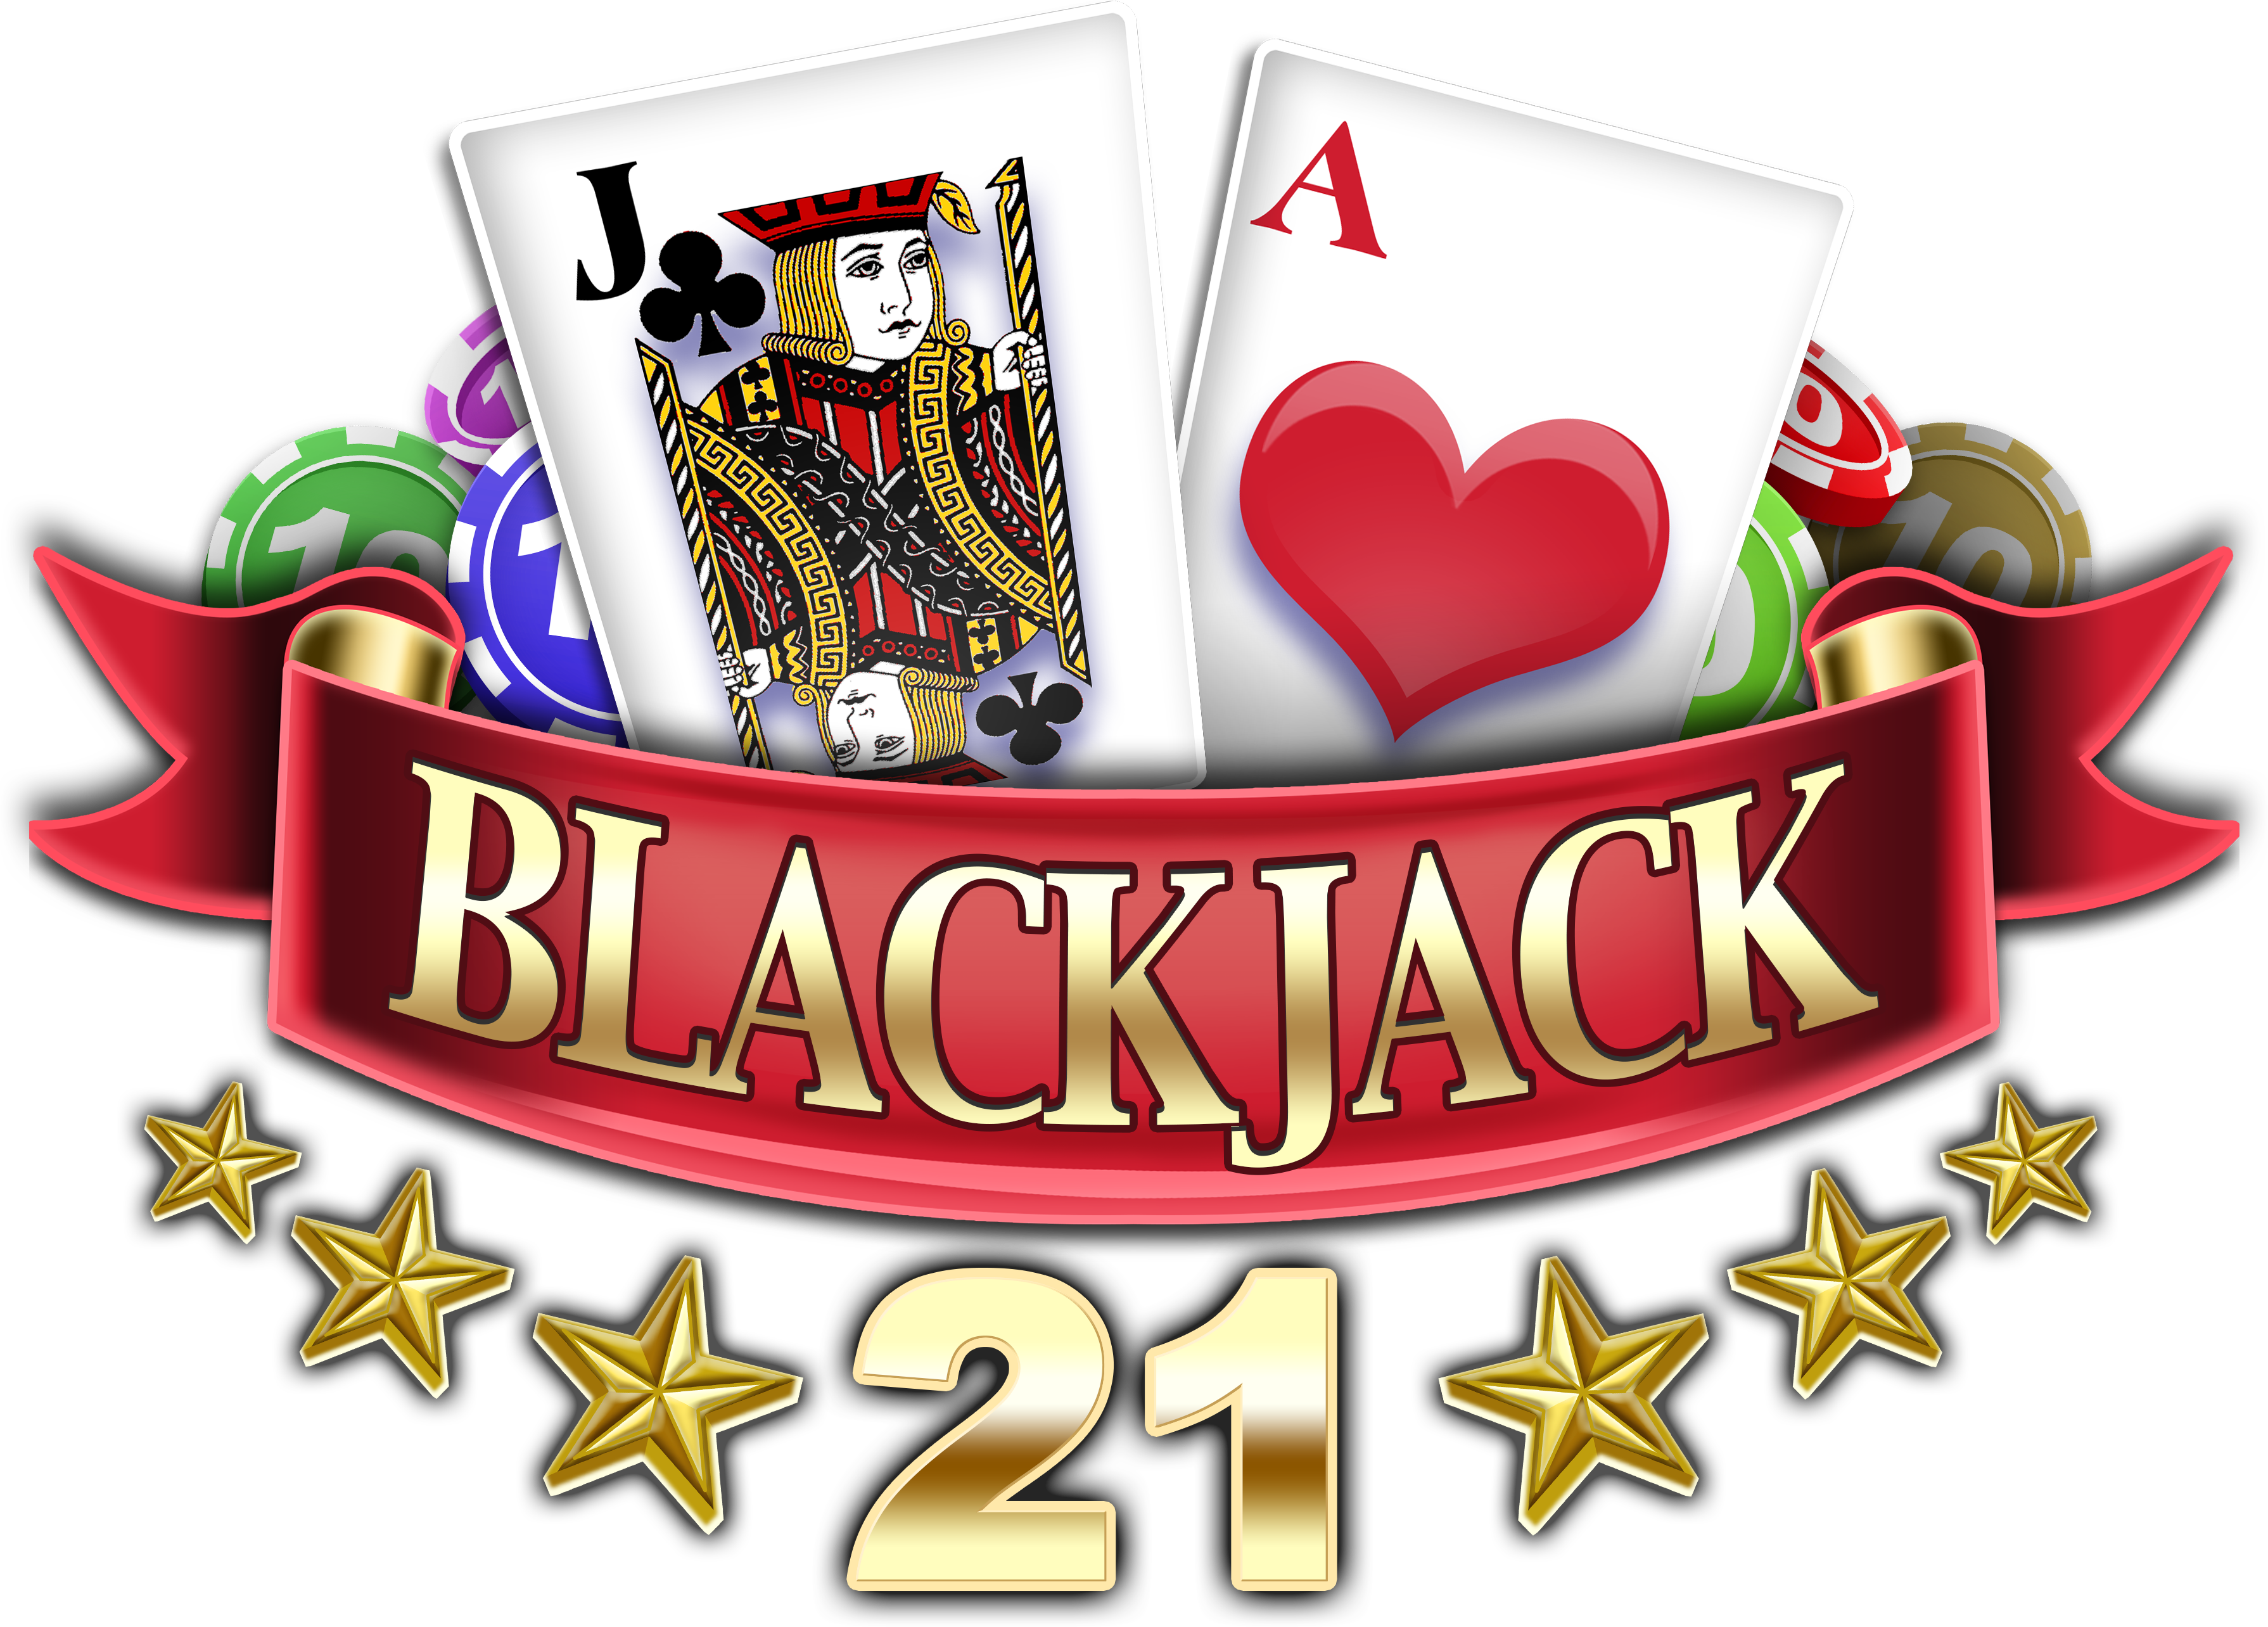 Blackjack 21 - Super Free Games